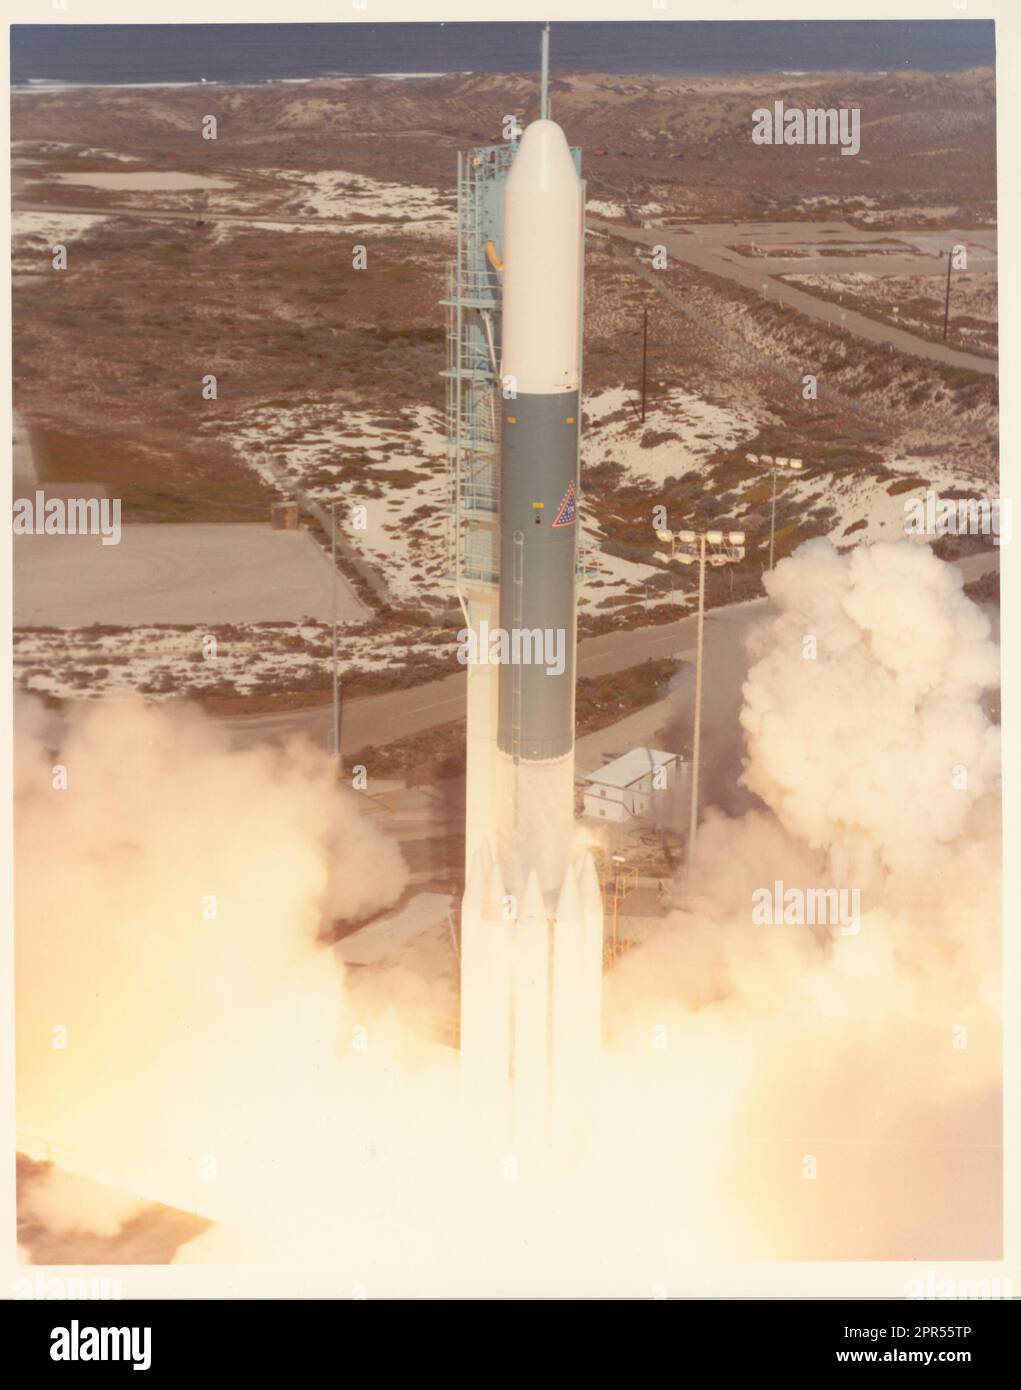 Die Delta Launch Vehicle Familie begann 1959 mit der Entwicklung. Das Delta bestand aus Teilen der Thor, einer ballistischen Mittelstreckenrakete, als erste Stufe, und der Vanguard als zweite. Das erste Delta wurde am 13. Mai 1960 von Cape Canaveral aus gestartet und war leistungsstark genug, um ein 100-Pfund-Raumschiff in die geostationäre Transferorbit zu bringen. Delta wurde verwendet, um zivile, kommerzielle und militärische Satelliten in die Umlaufbahn zu starten. Kevin Forsyth bemerkt, dass 'Delta eines der dauerhaftesten Mitglieder der ursprünglichen Familie von US-Raumfahrtfahrzeugen ist und seit langem als 'The Wor' bekannt ist Stockfoto